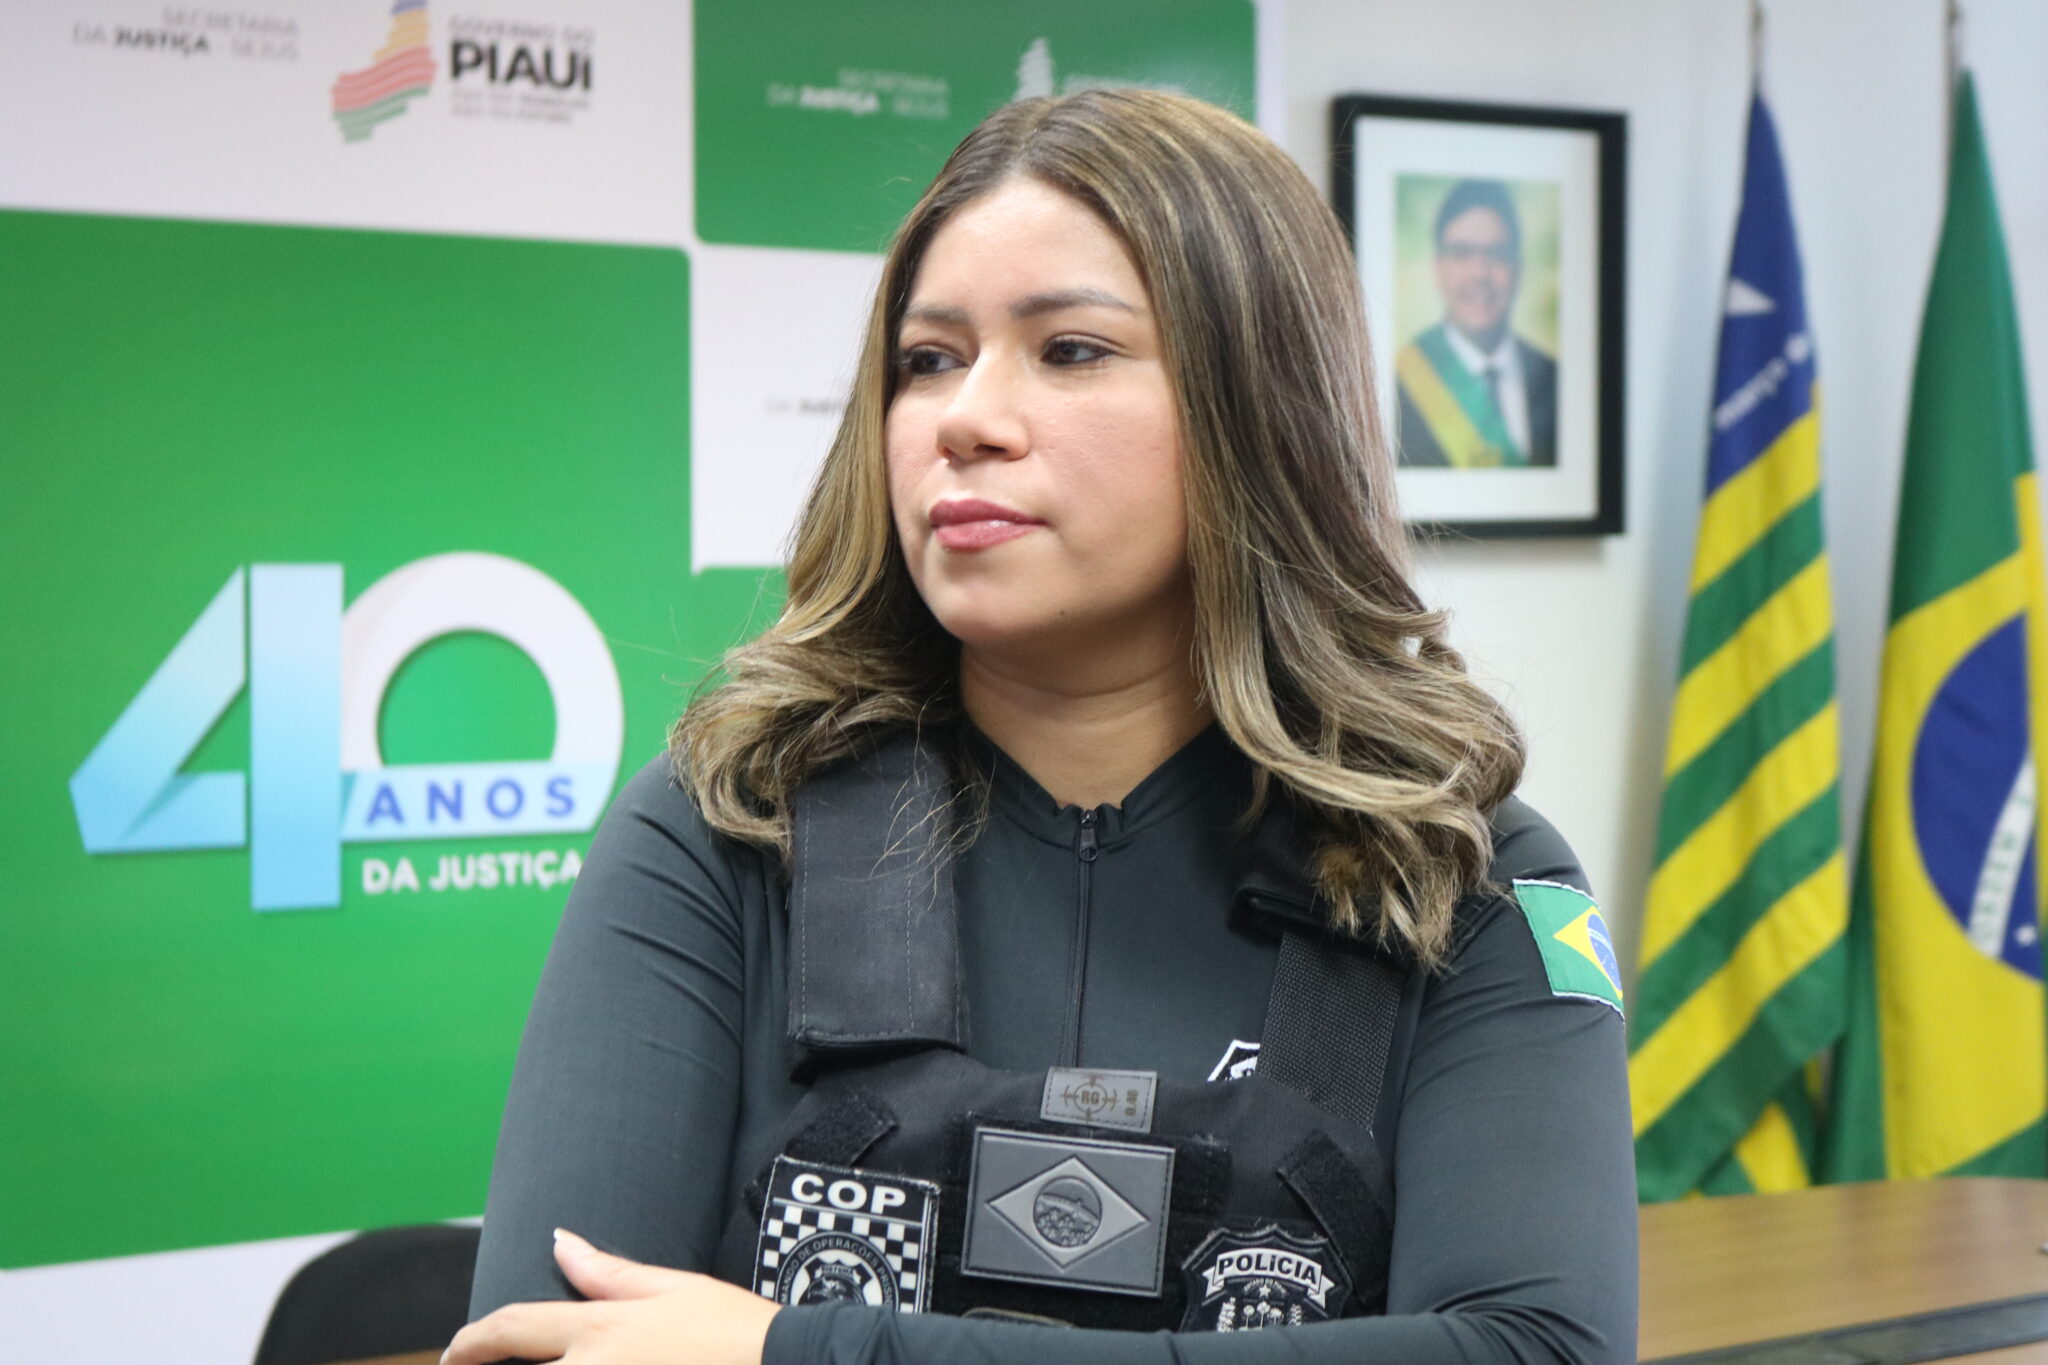 Policial penal do Piauí participa do Congresso Brasileiro de Mulheres na Polícia